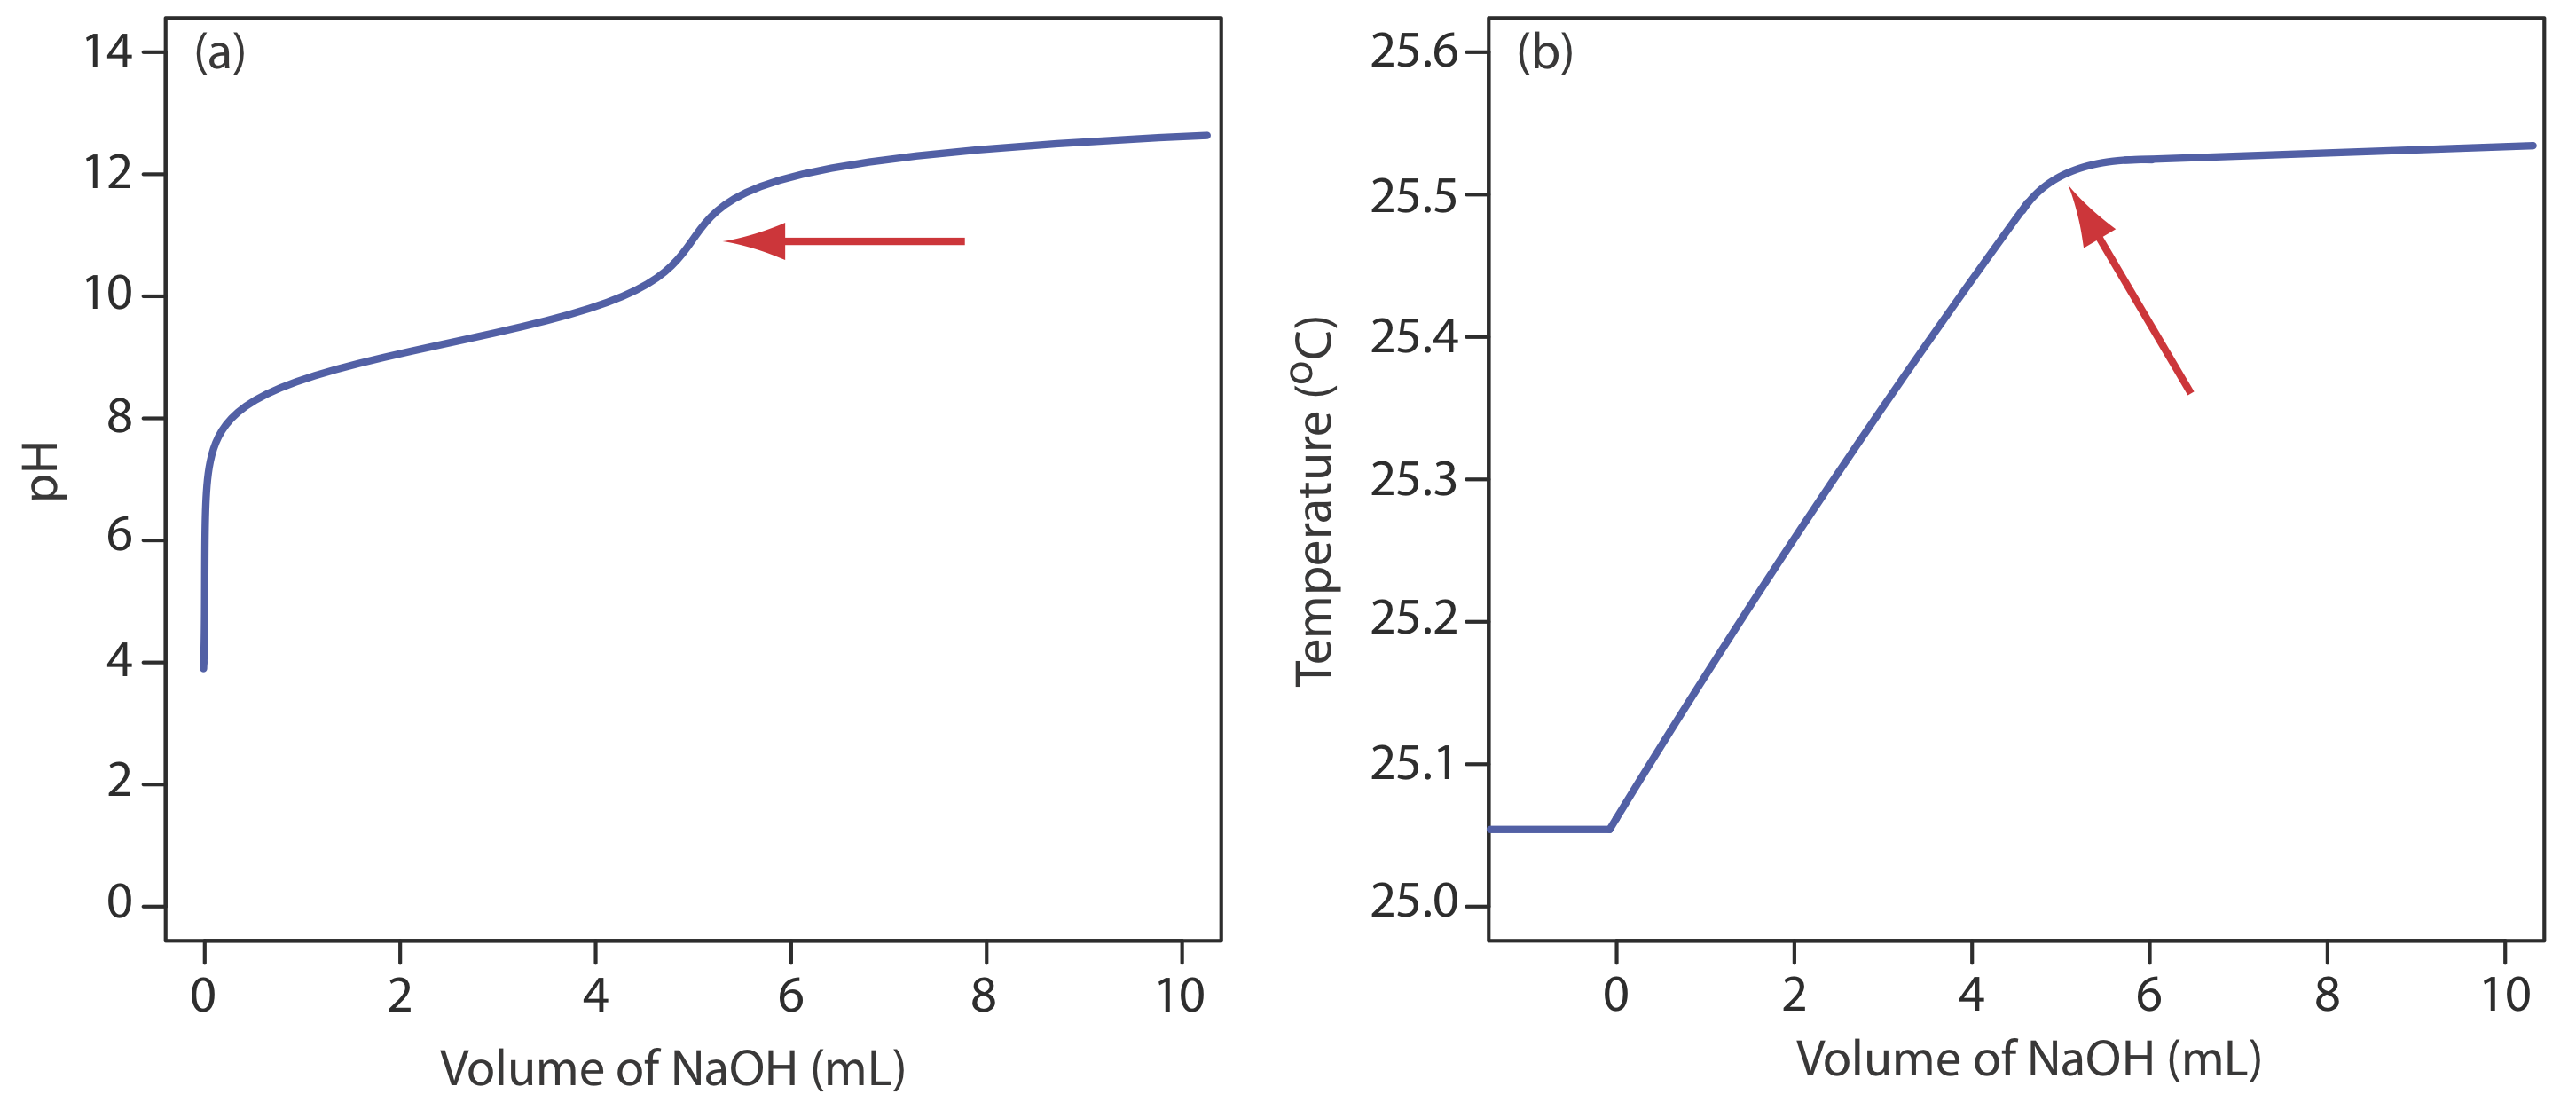 El gráfico de pH muestra un incremento drástico inmediato del pH con la adición de NaOH que se ralentiza alrededor del pH 8 y aumenta lentamente hasta aumentar bruscamente poco en el punto de equivalencia. El gráfico de temperatura aumenta linealmente con la adición de NaOH y deja de aumentar en el punto de equivalencia.